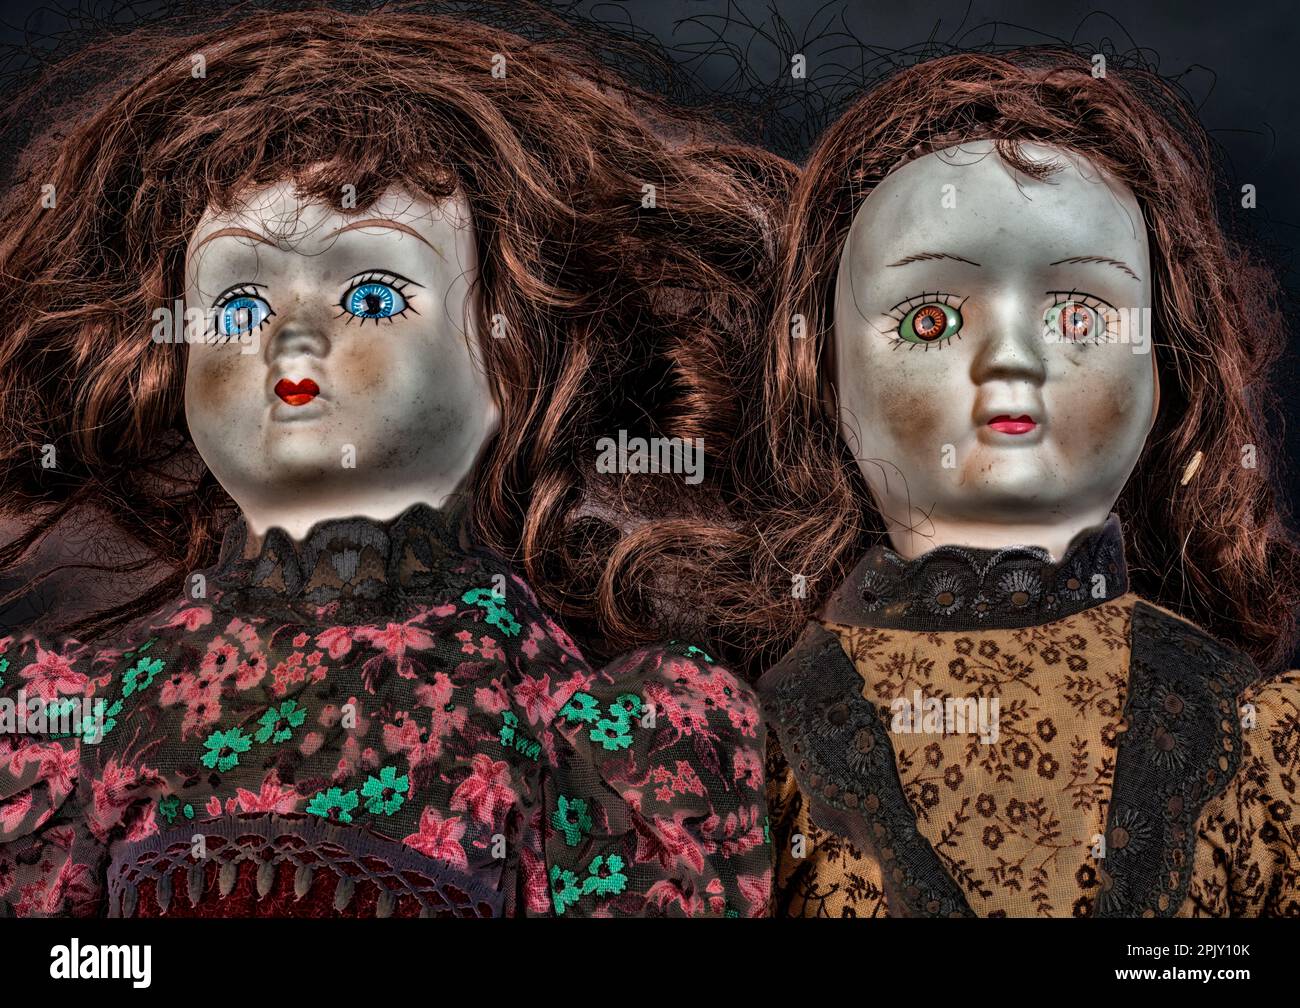 Alte Puppen, dämonische Gesichter Stockfoto